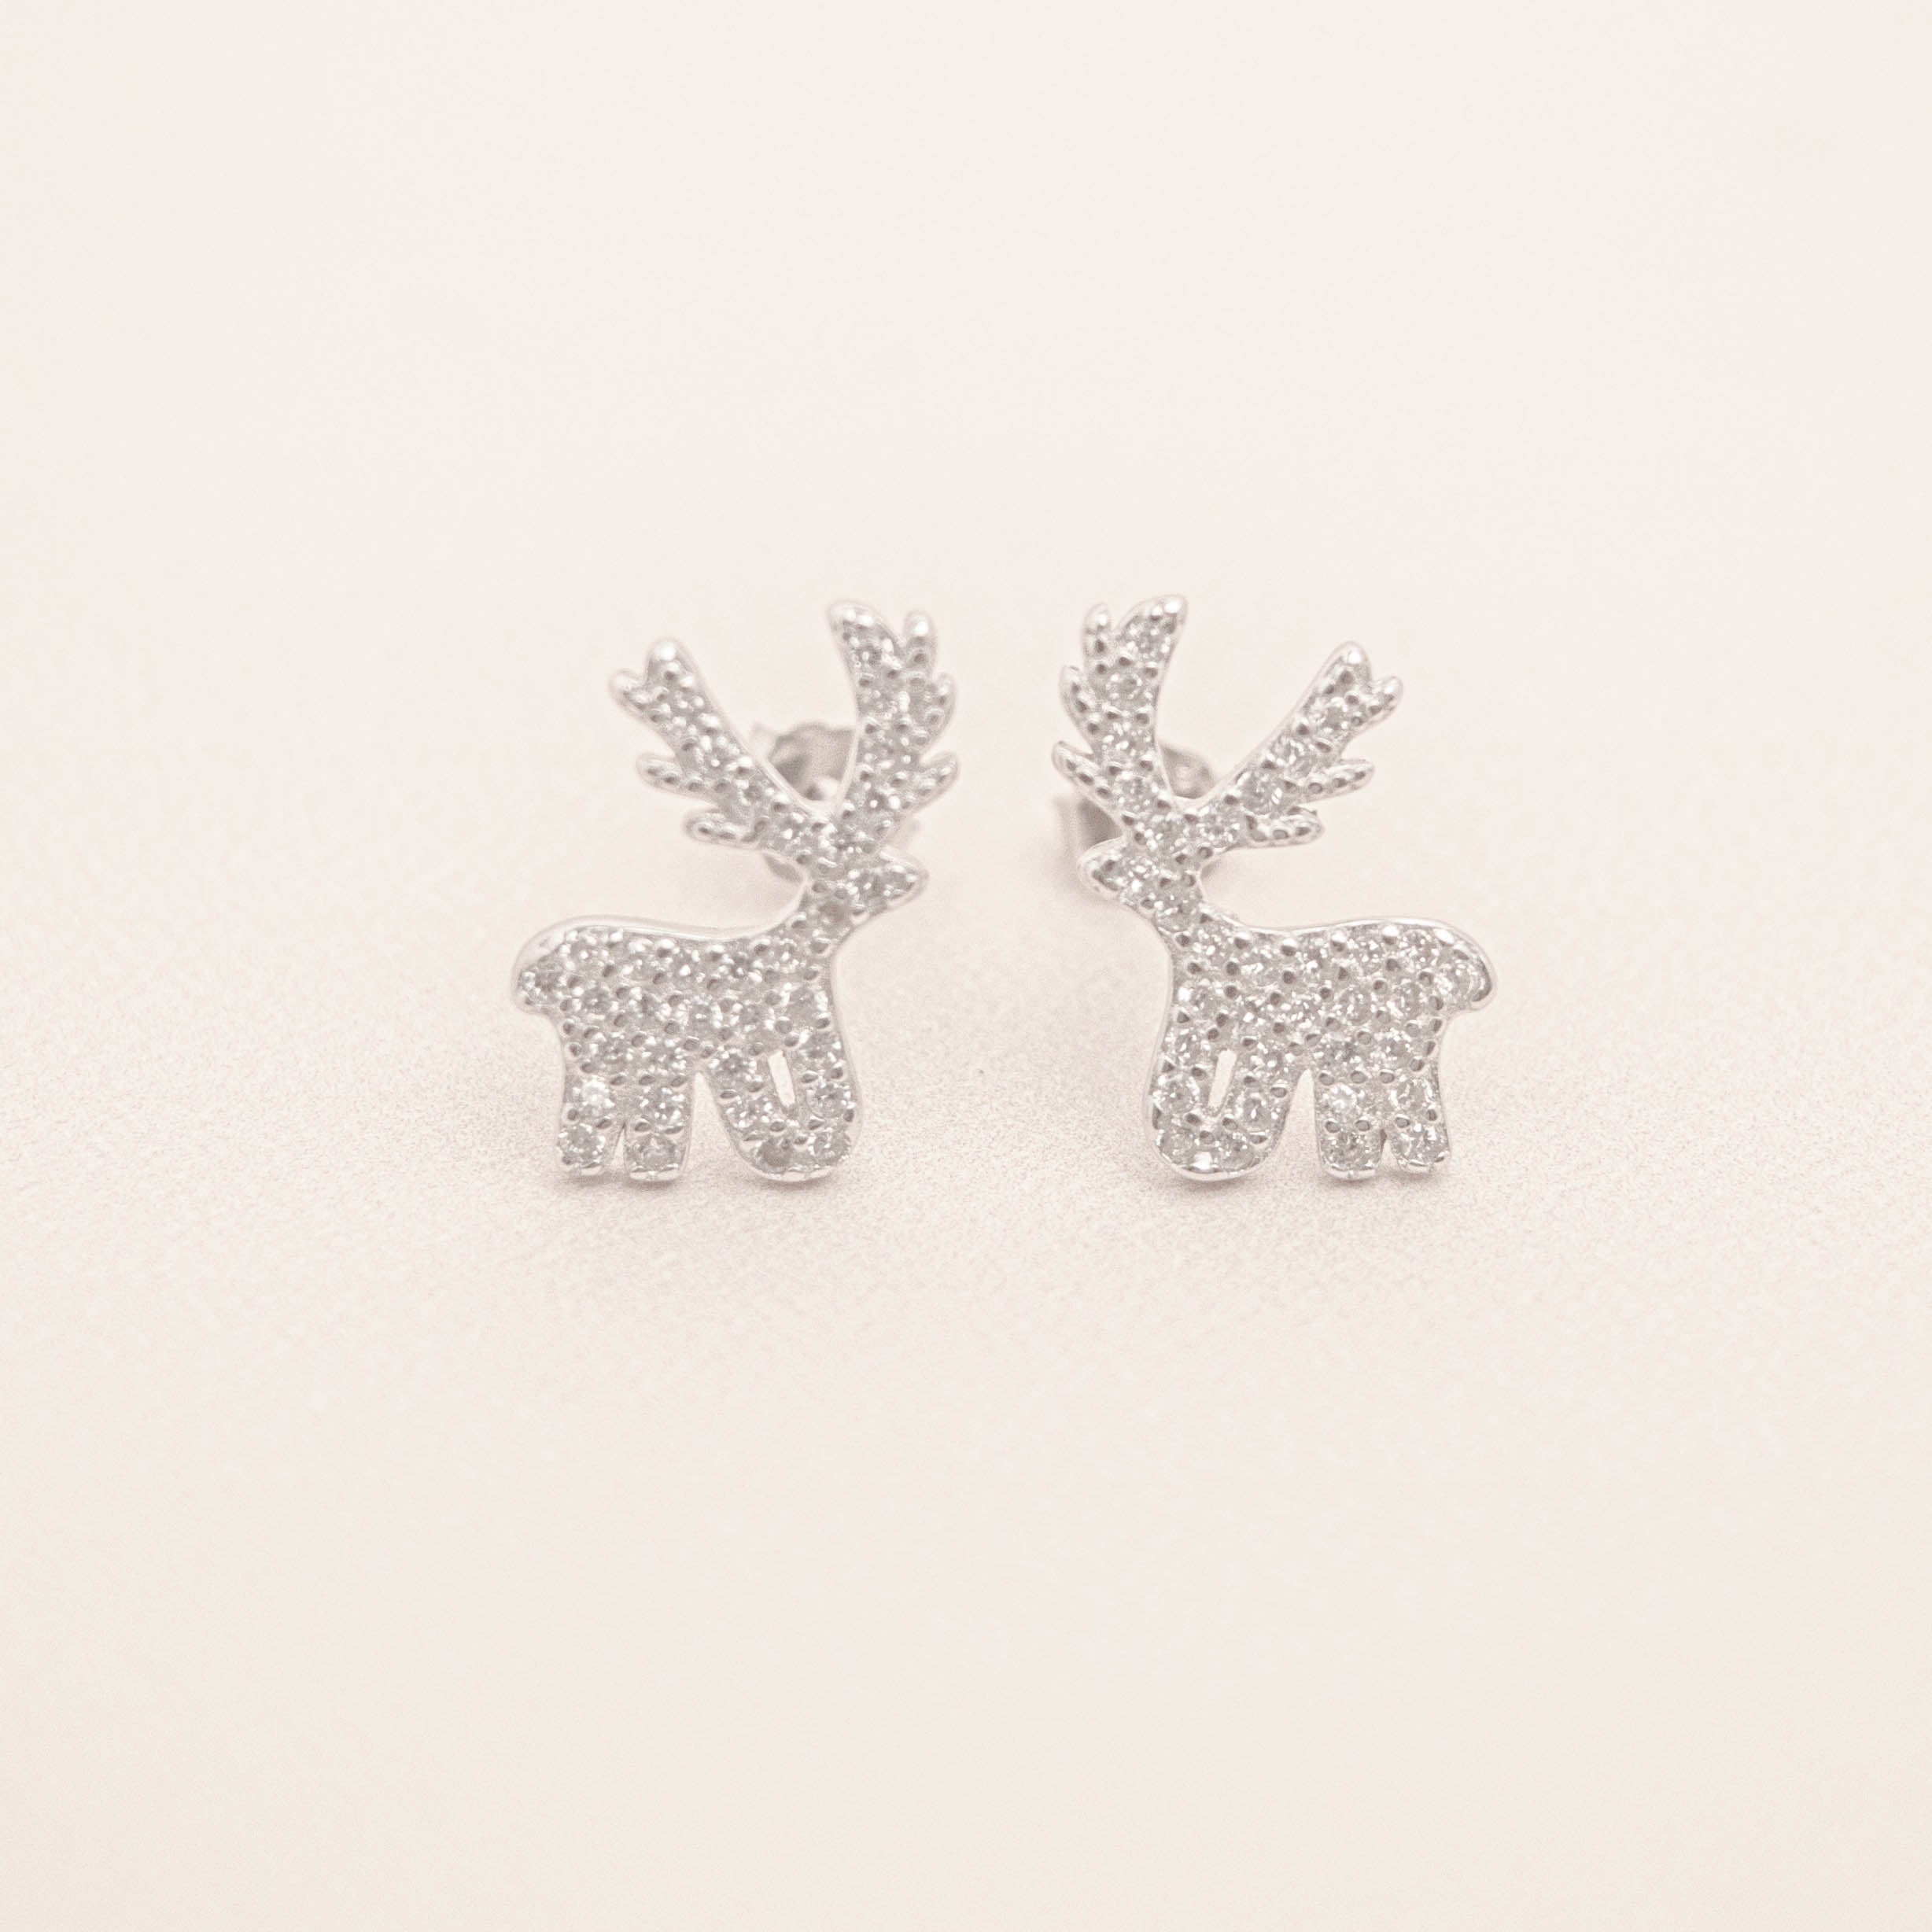 Christmas Theme Reindeer Earrings